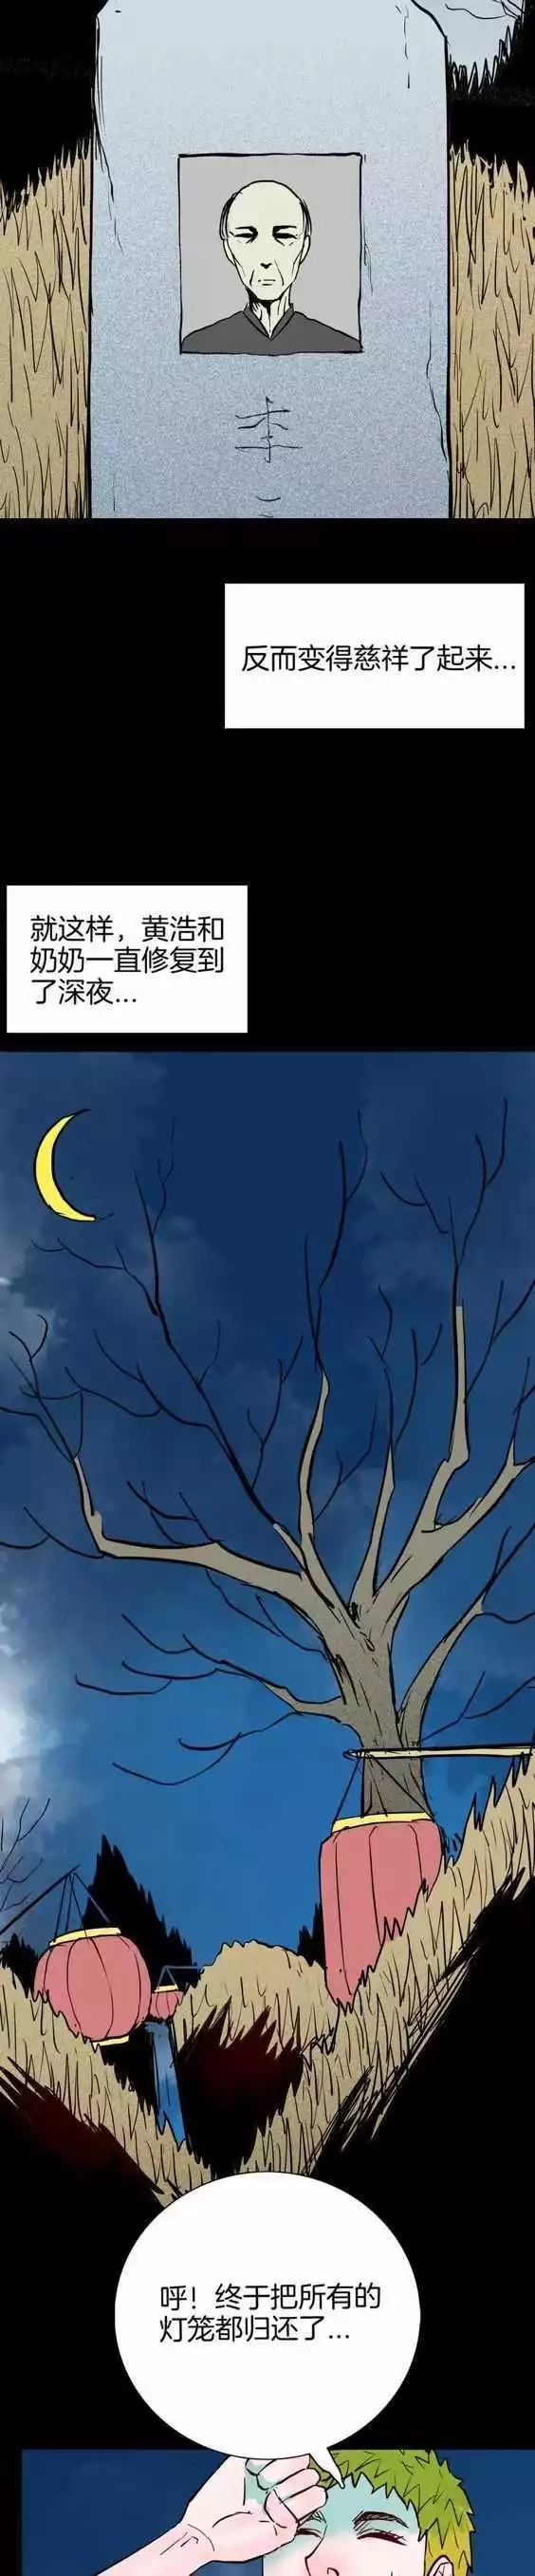 恐怖漫畫《元宵燈會》不能亂動的燈籠 靈異 第28張